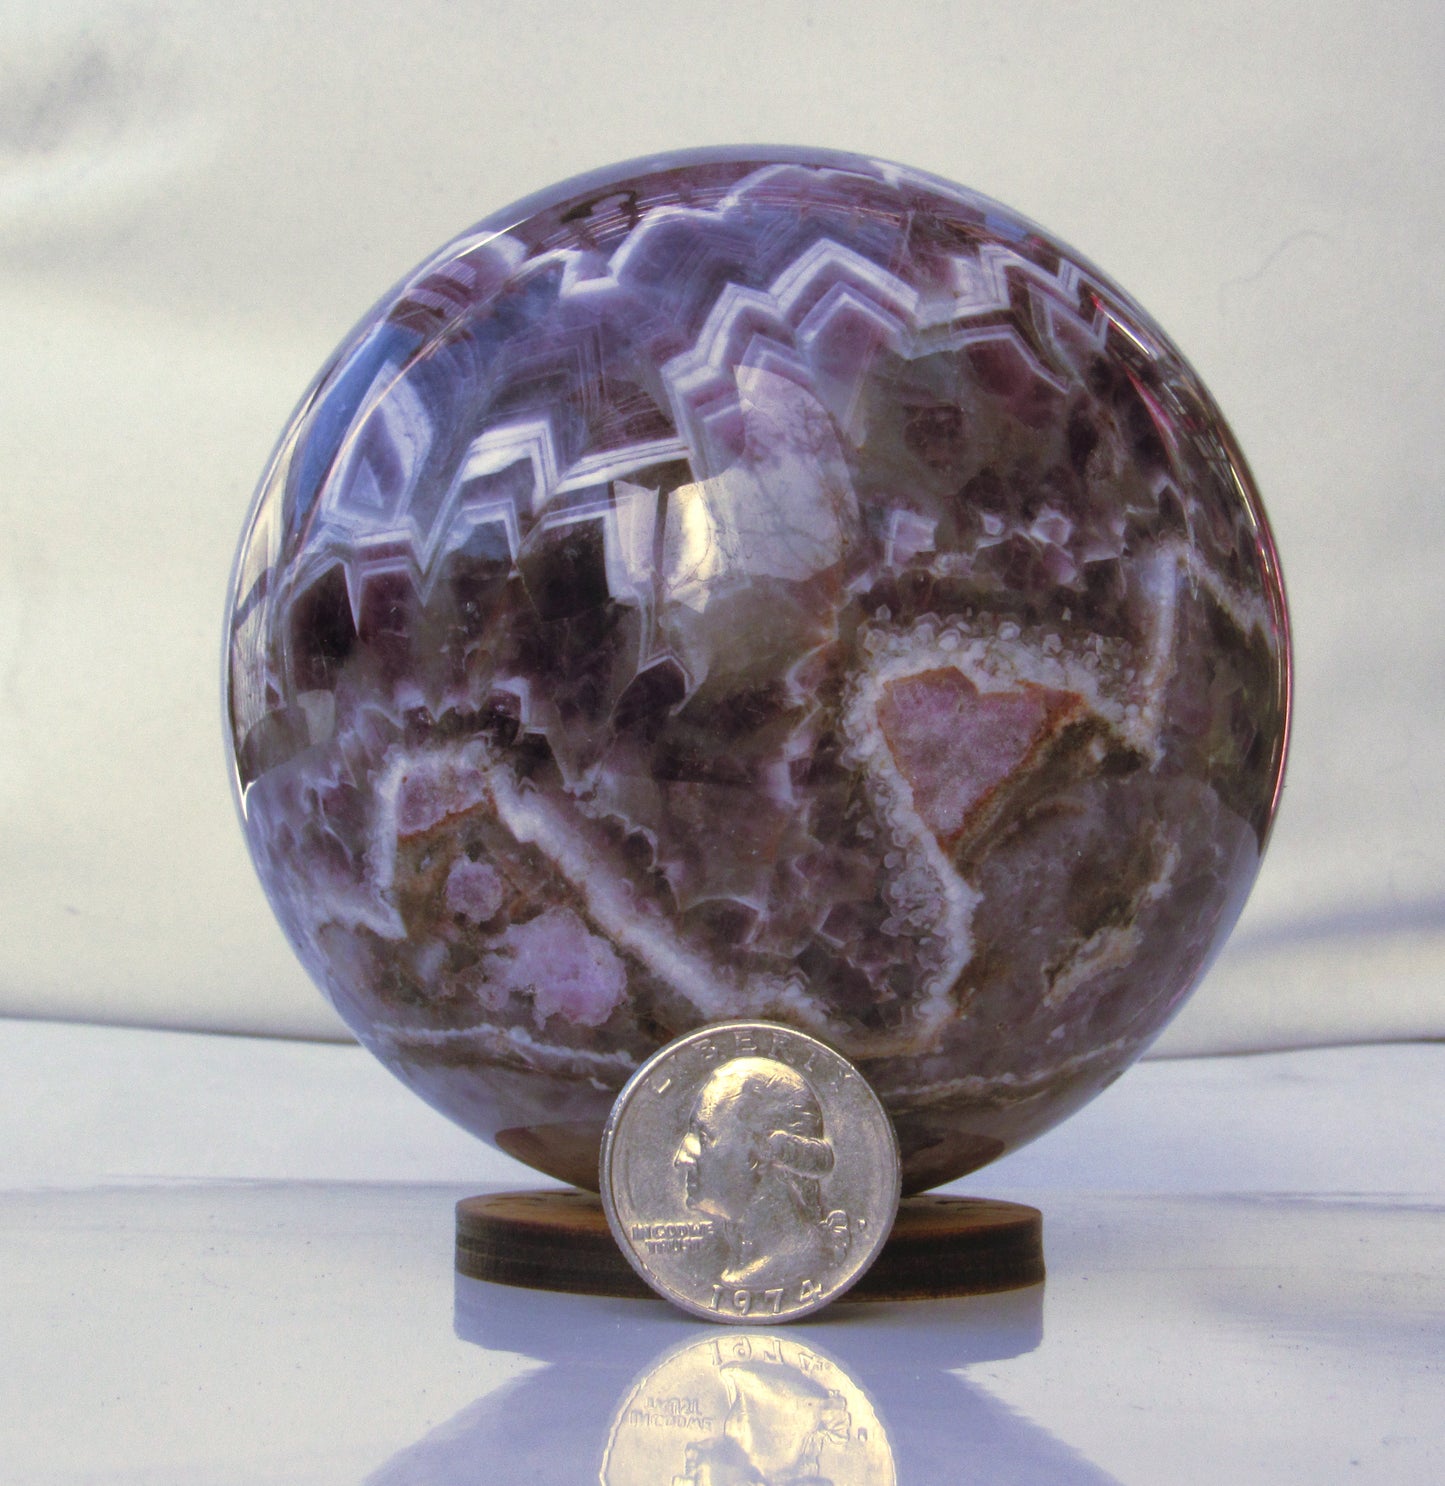 Amethyst crystal gemstone sphere